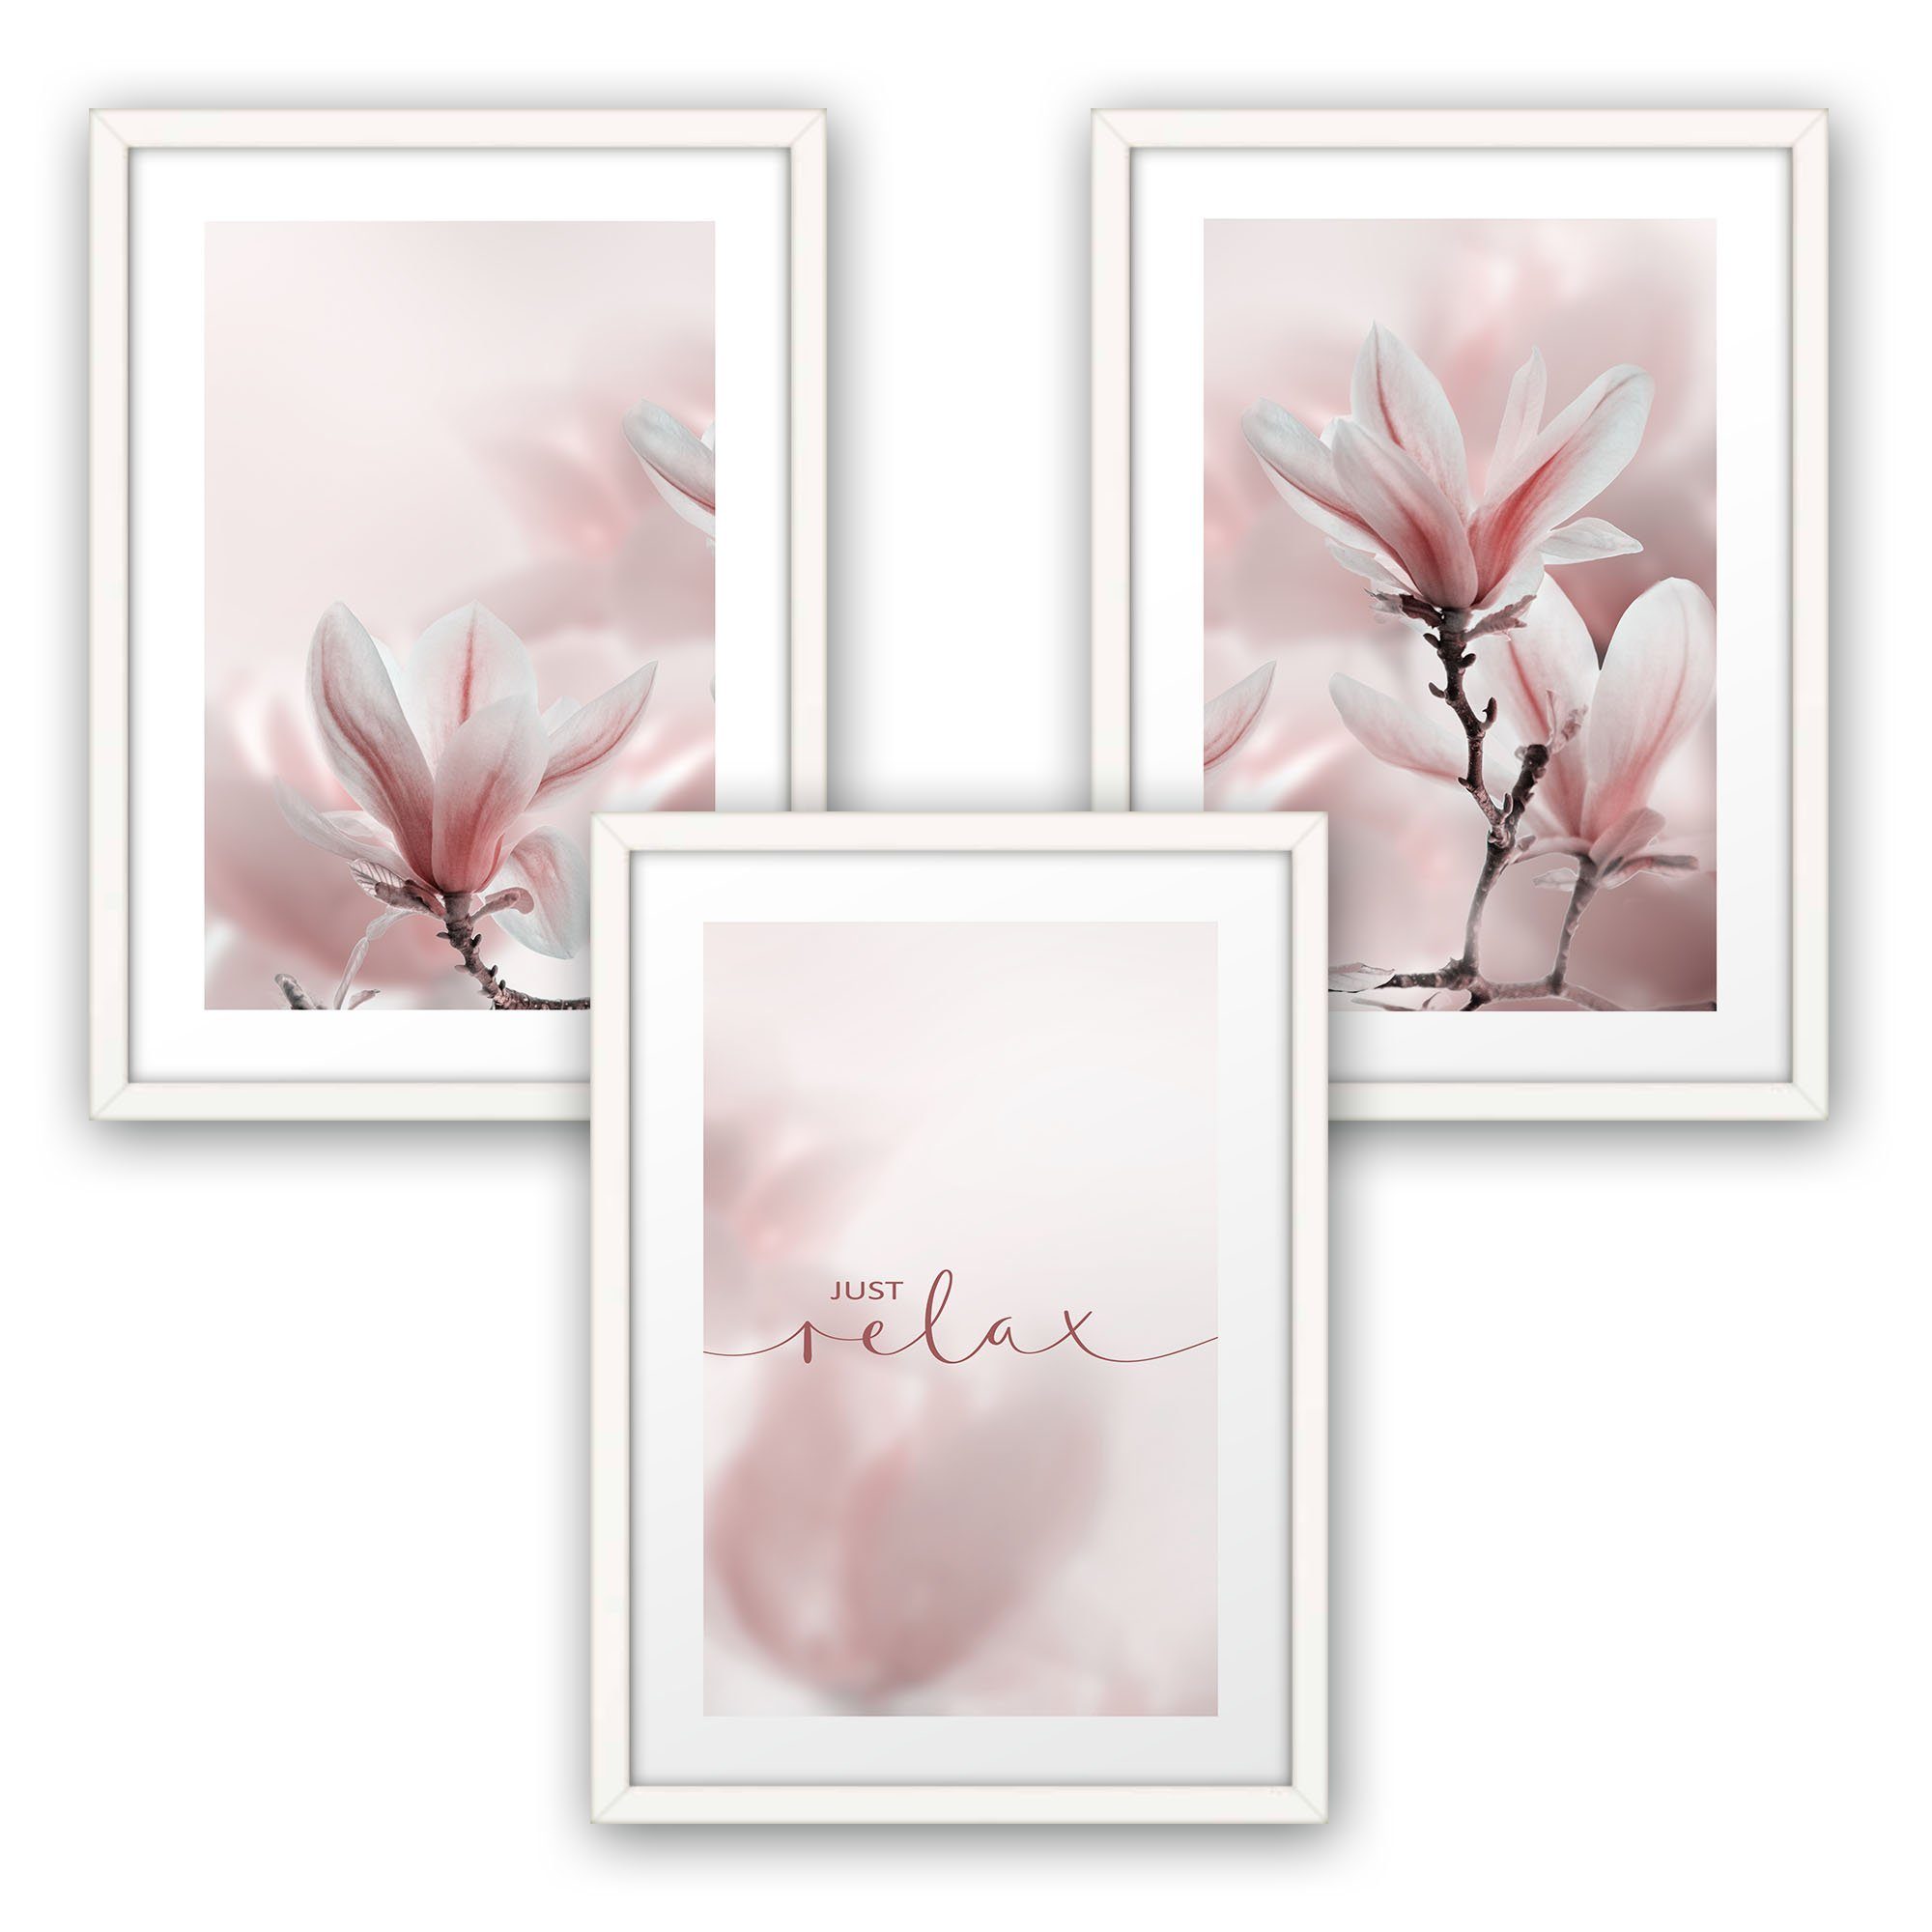 Kreative Feder Poster A3 Set mit Premium DIN 3-teilig Blumen Rahmen optional (Set, A4 Rahmen; St), mit Rahmen, oder wahlweise optional 3 „Magnolie“ weißer DIN